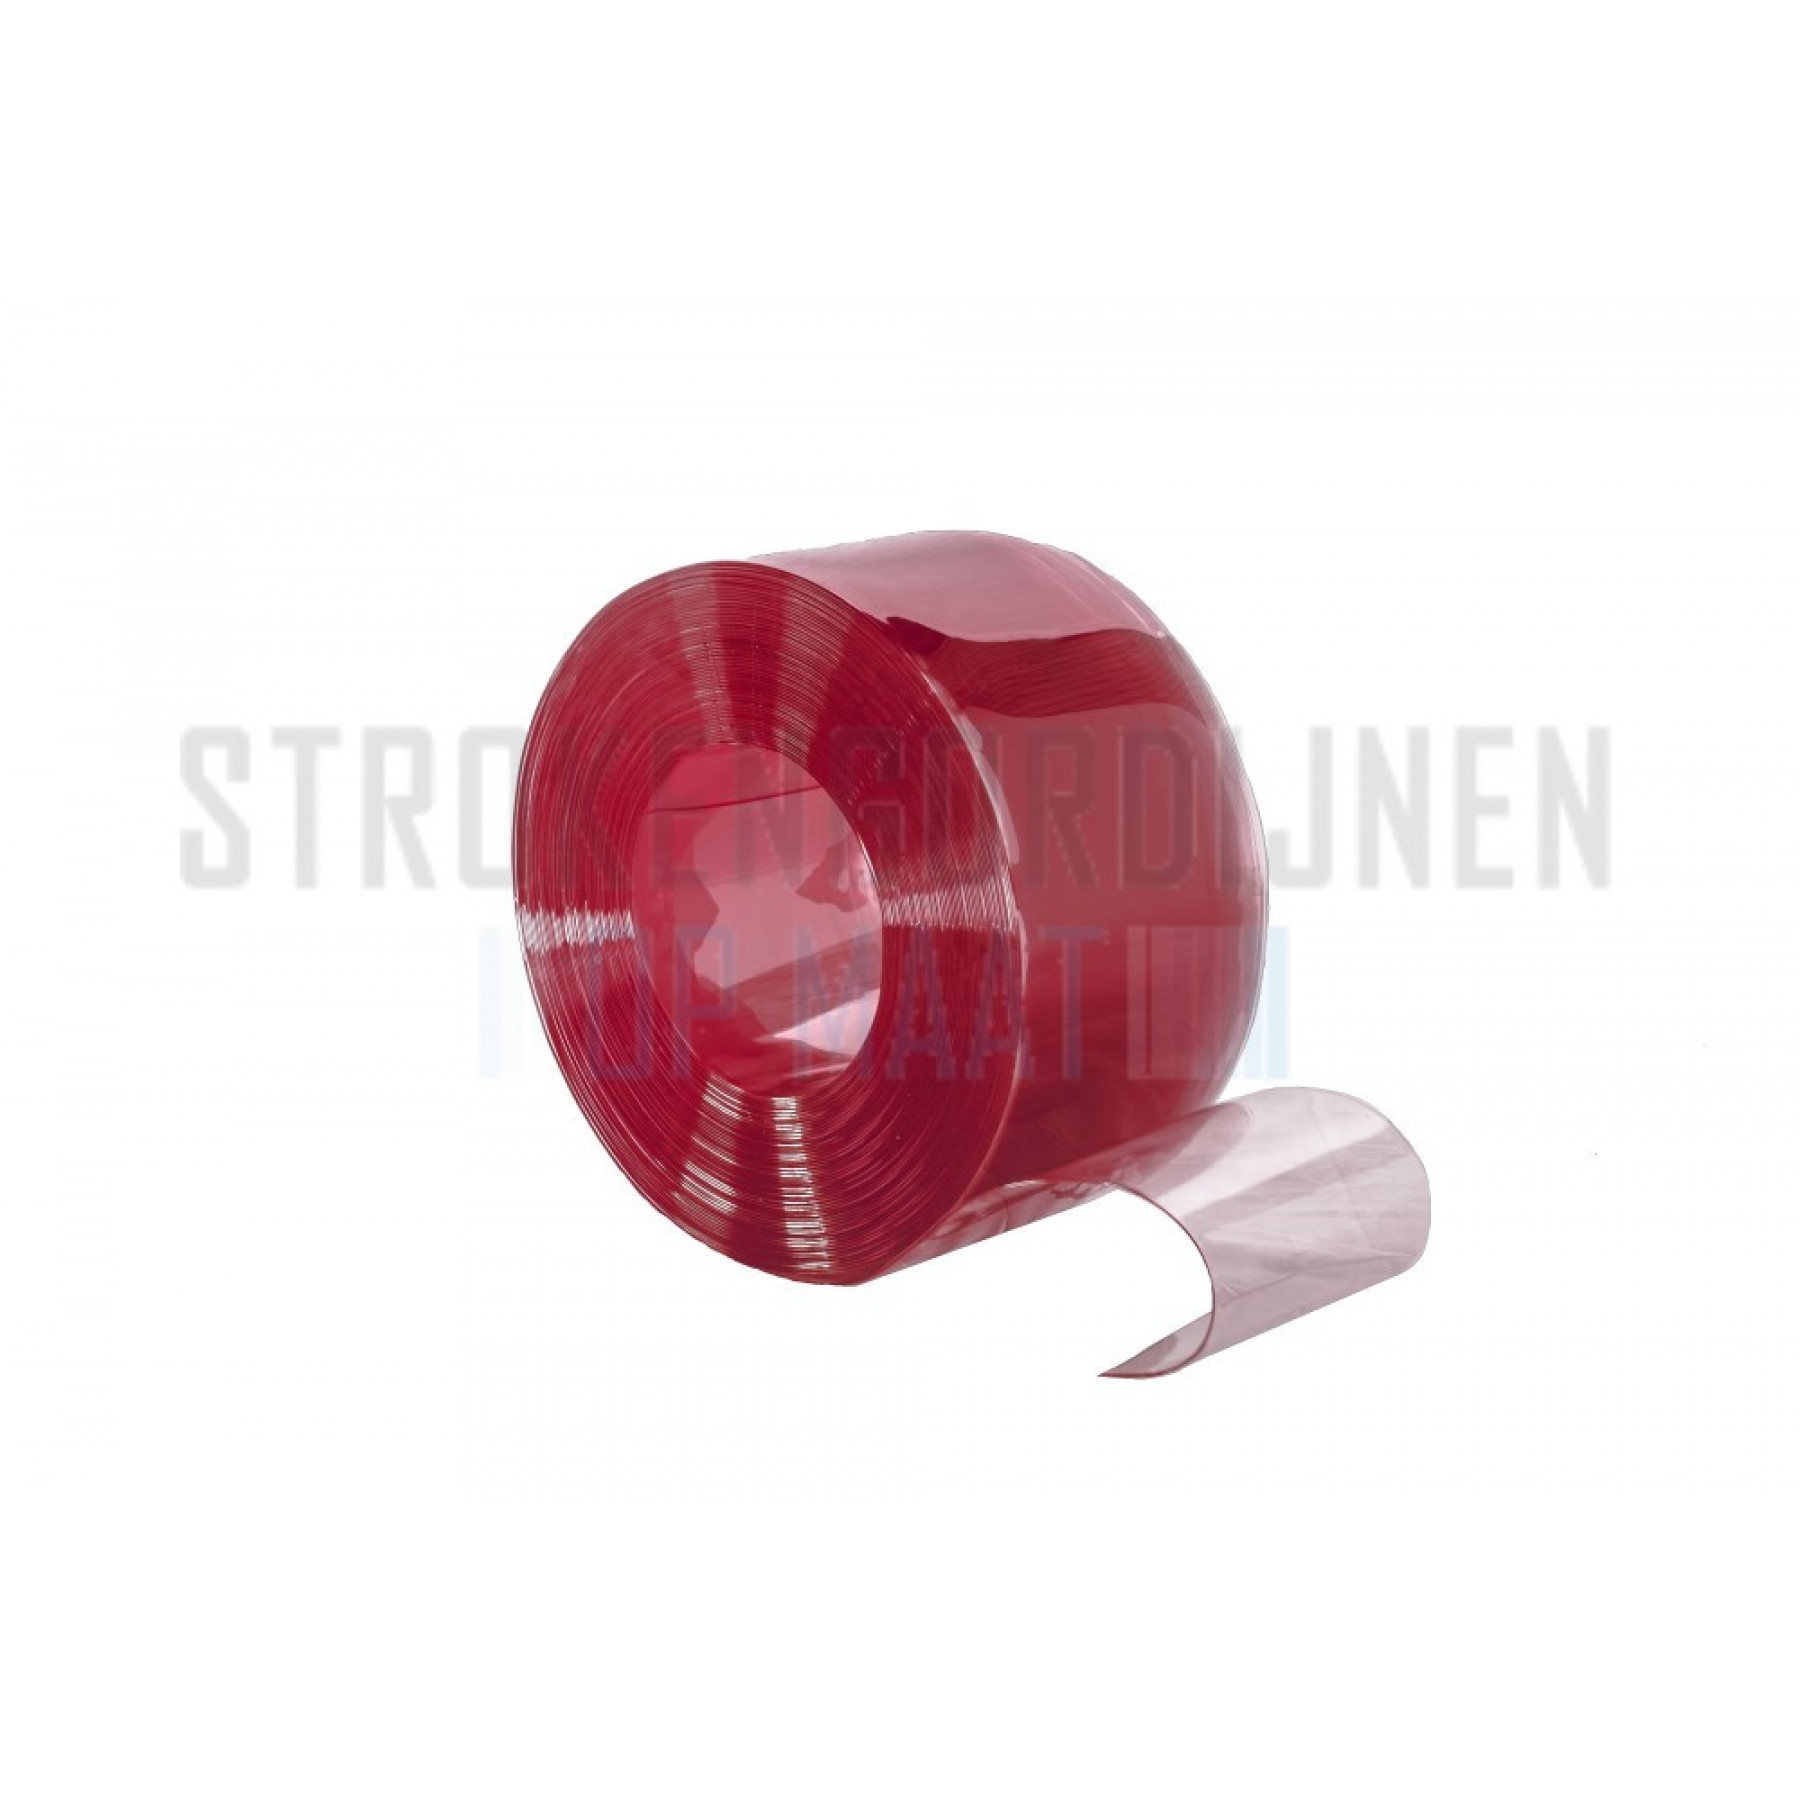 PVC op rol, 200mm breed, 2mm dik, 50 meter lengte, kleur rood, transparant